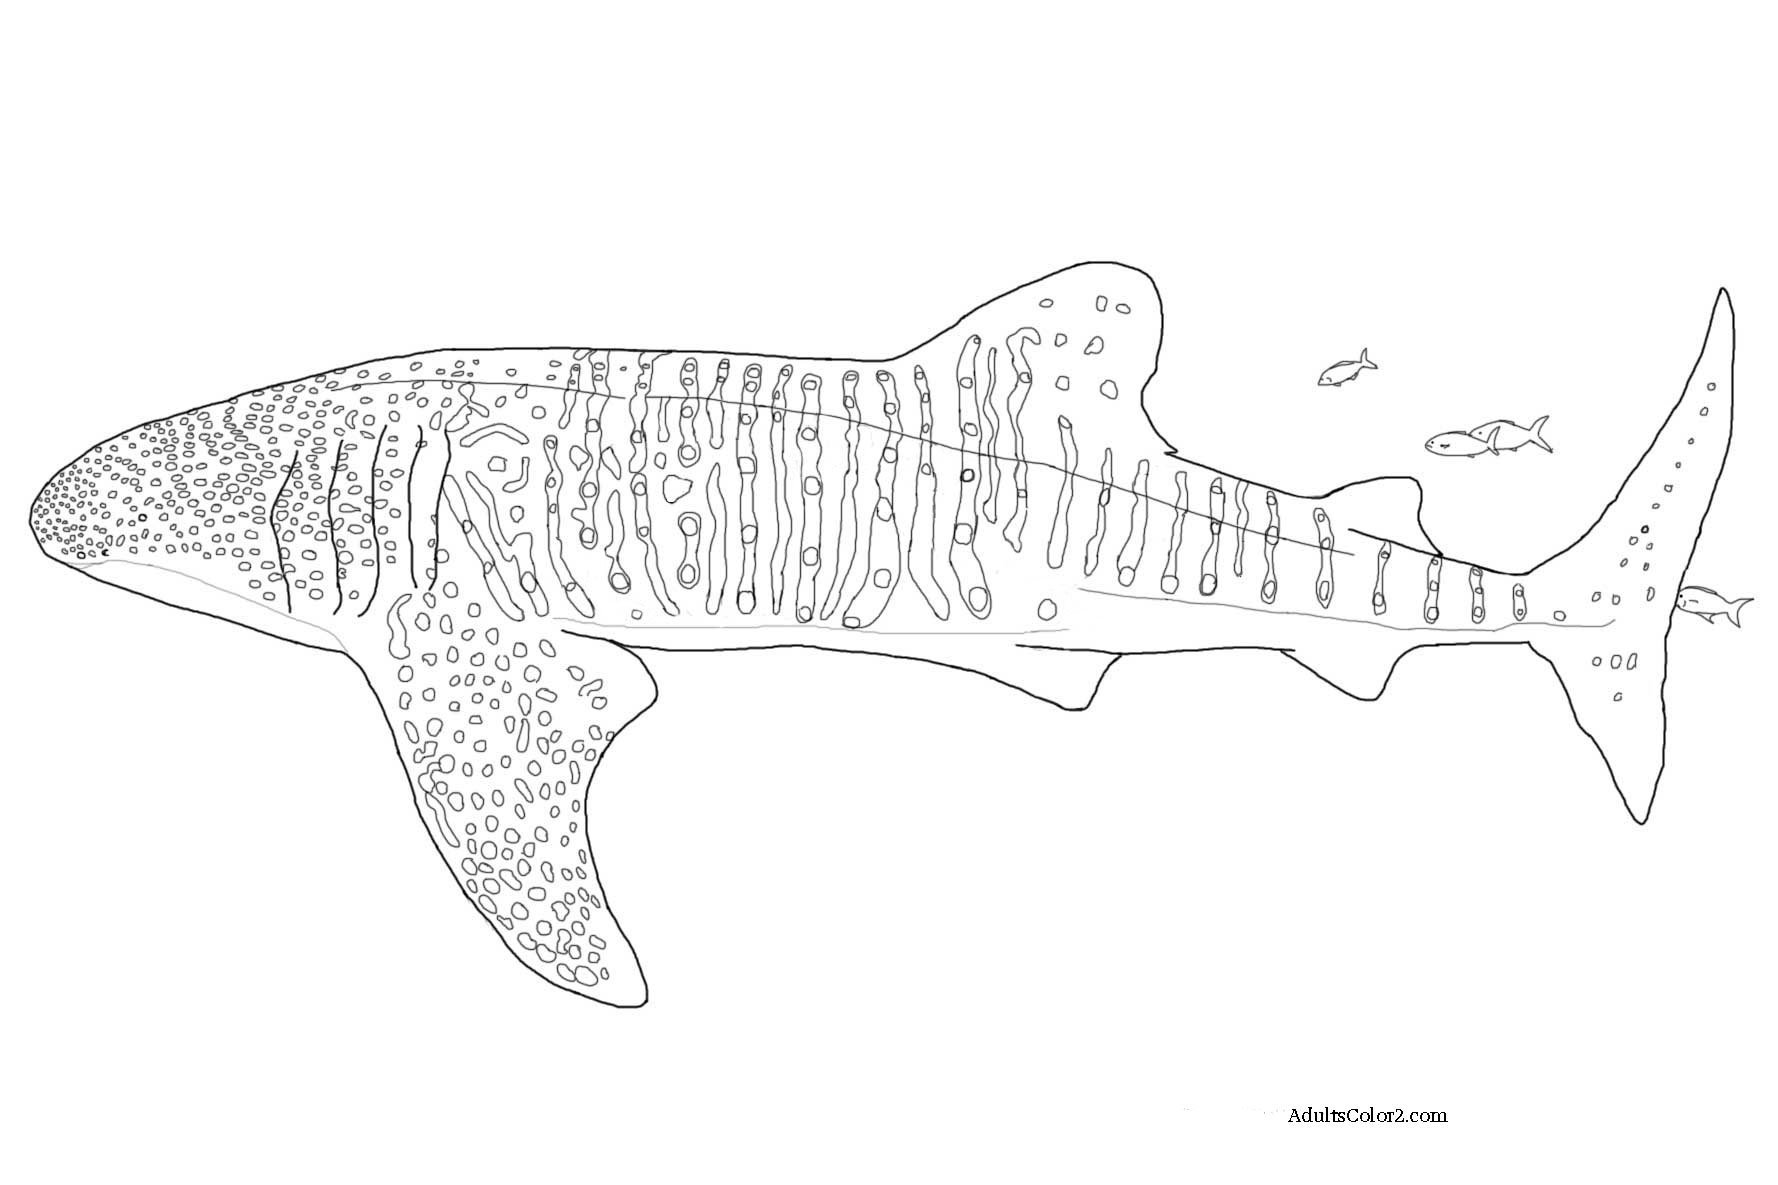 Basking Shark coloring #17, Download drawings